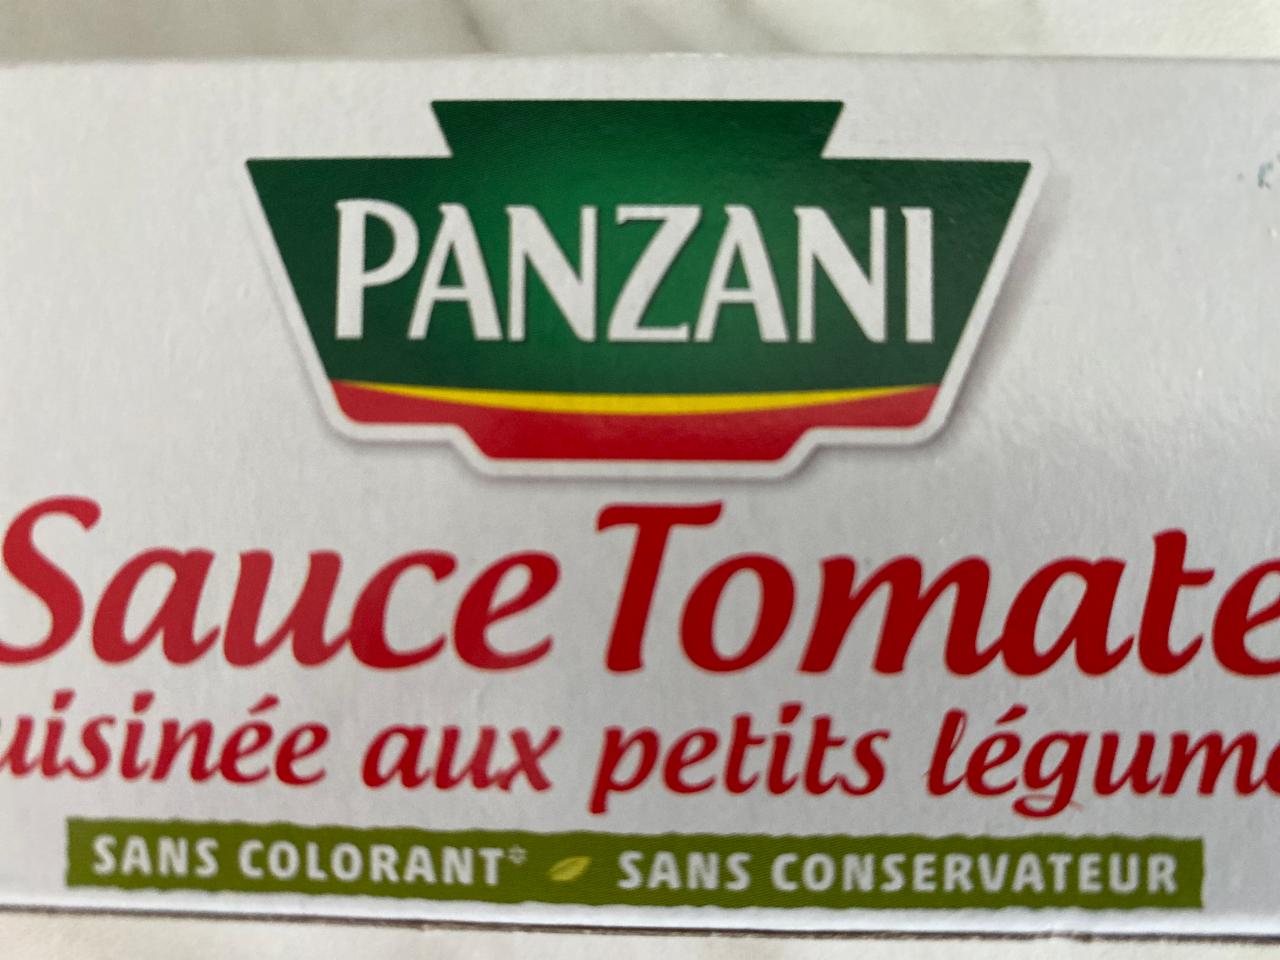 Fotografie - Sauce Tomate cuisinée aux petits légumes Panzani